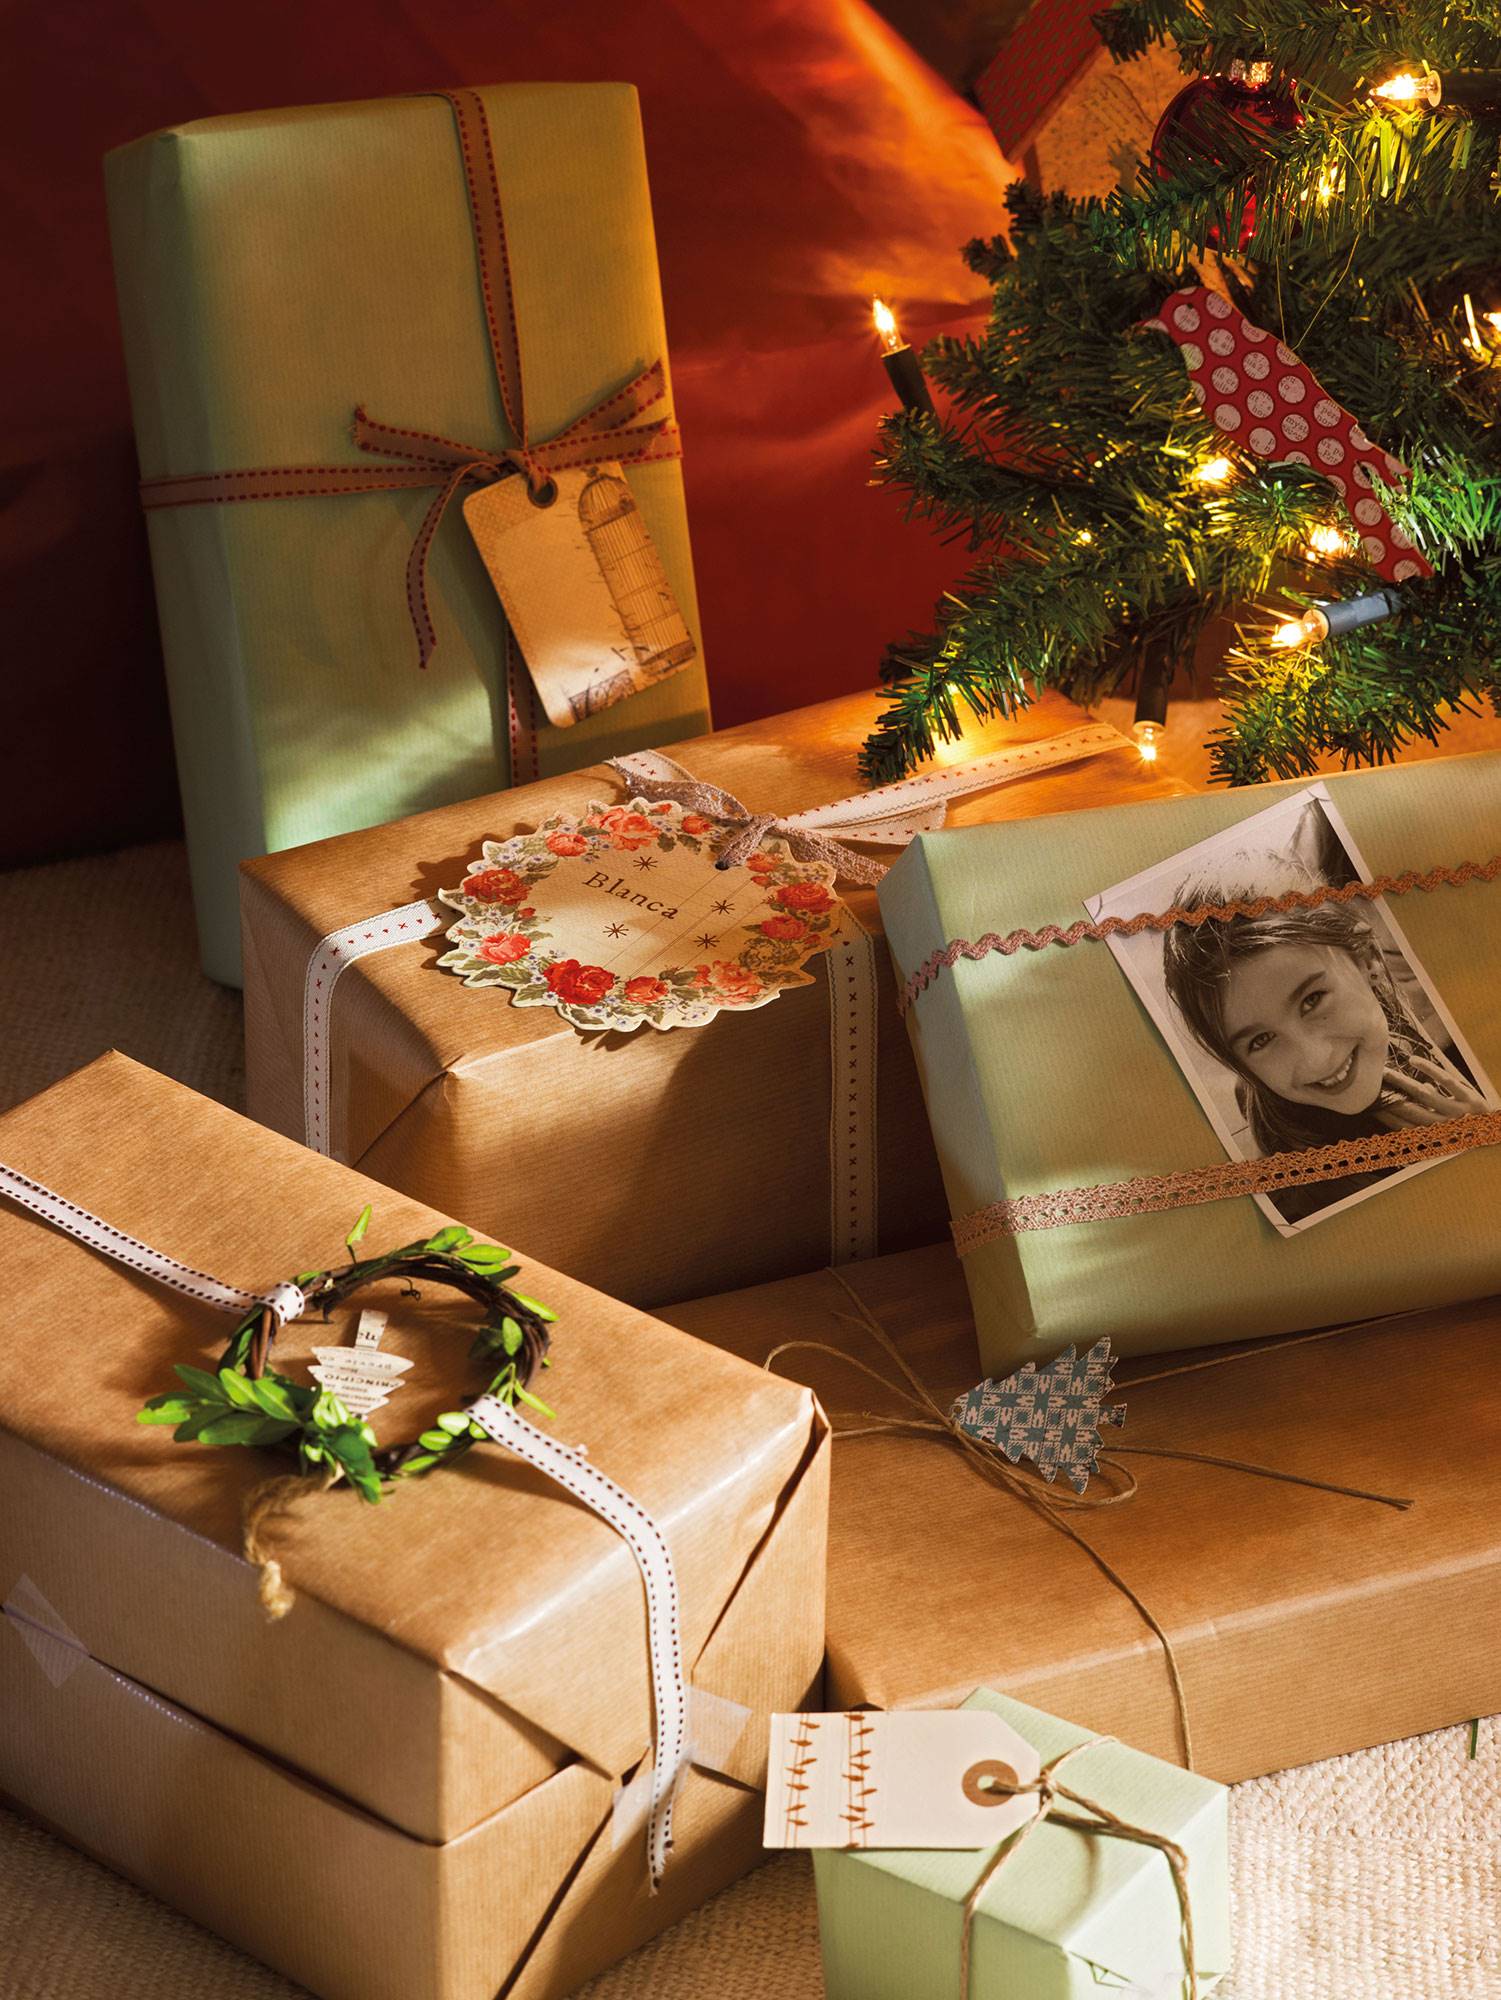 detalle-de-regalos-de-navidad-decorados-con-los-nombres-y-fotos 2c1cb2d9